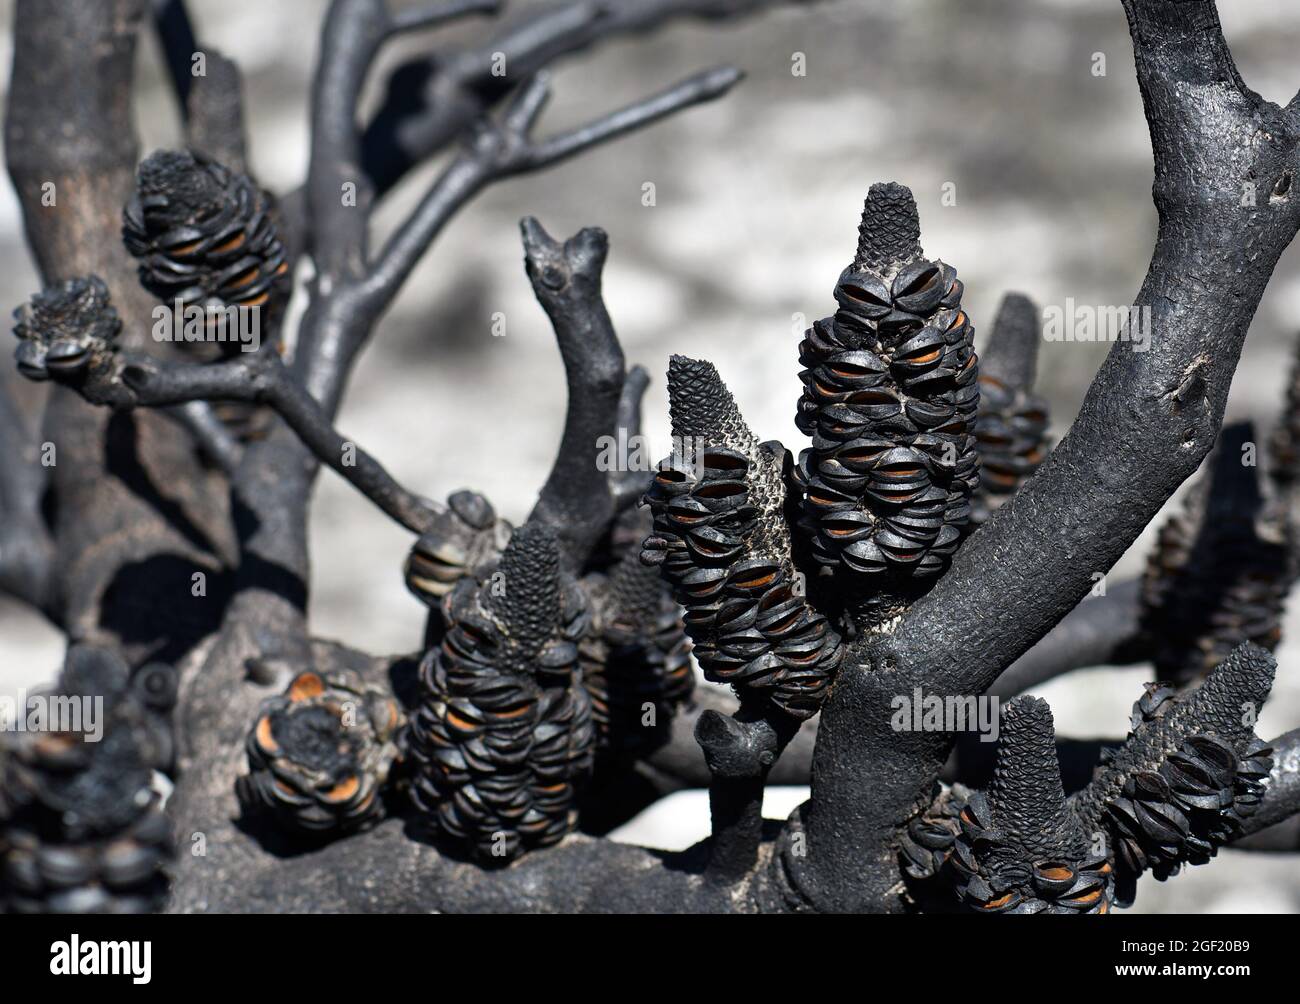 Abrir folículos de semillas de conos serrata de Banksia en una rama arbórea quemada tras un incendio en el bosque de Sydney, NSW, Australia Foto de stock